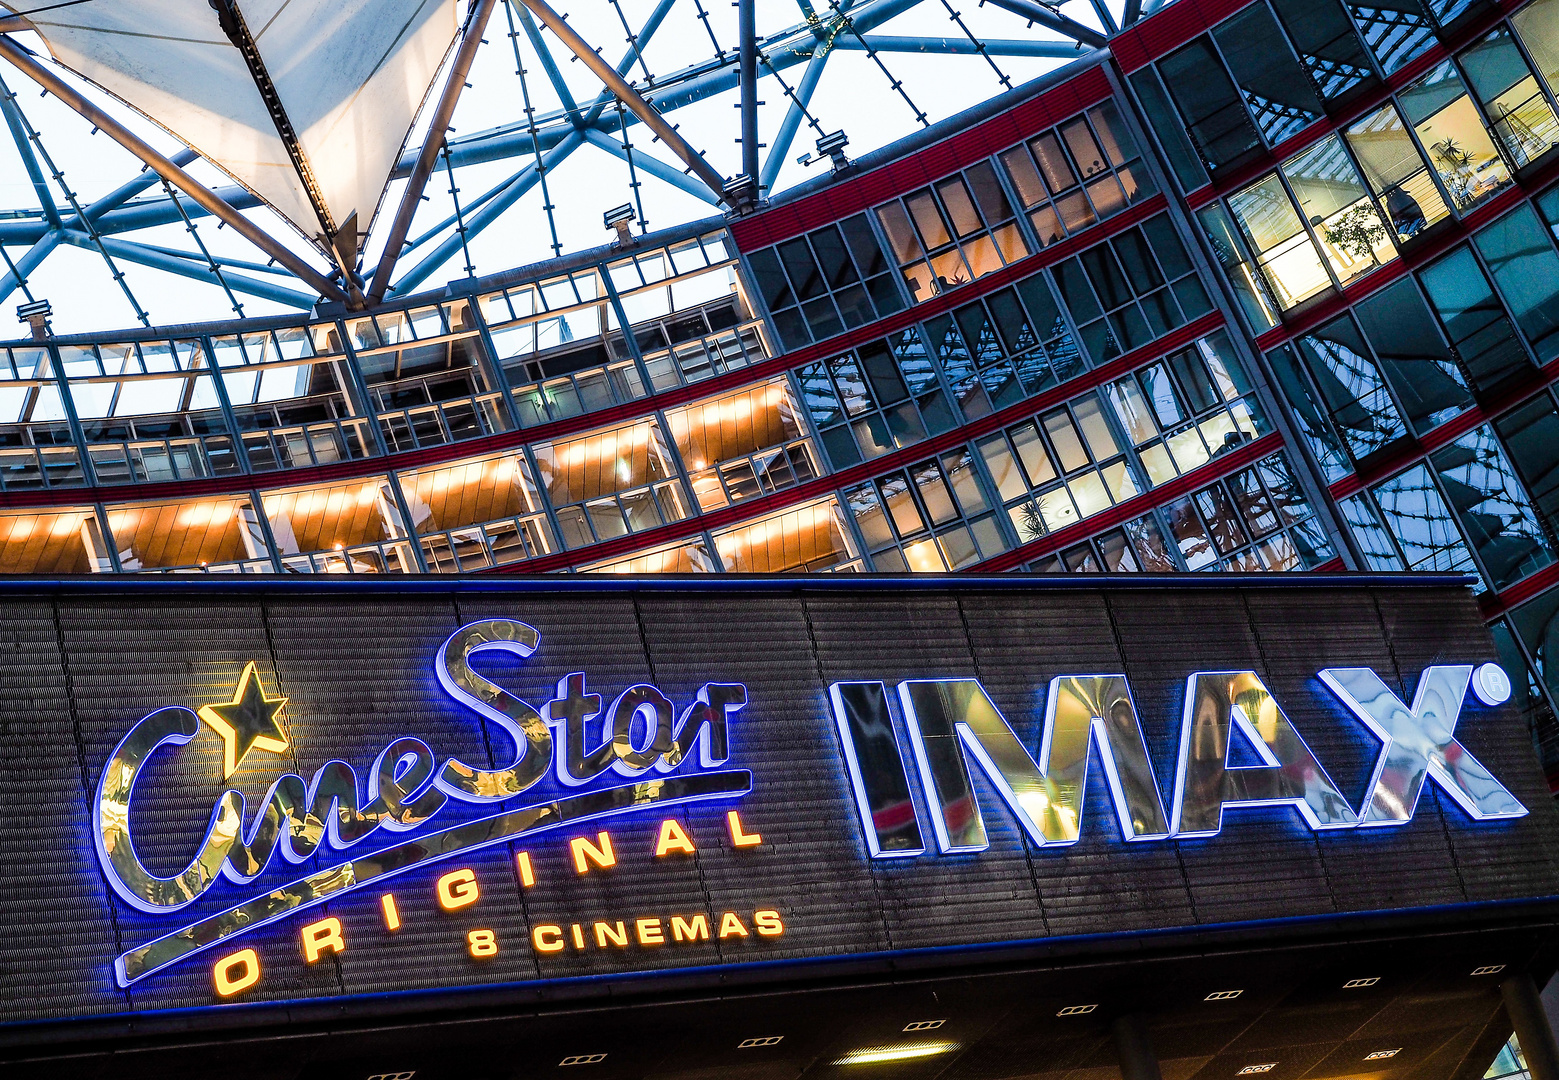 CINE STAR IMAX